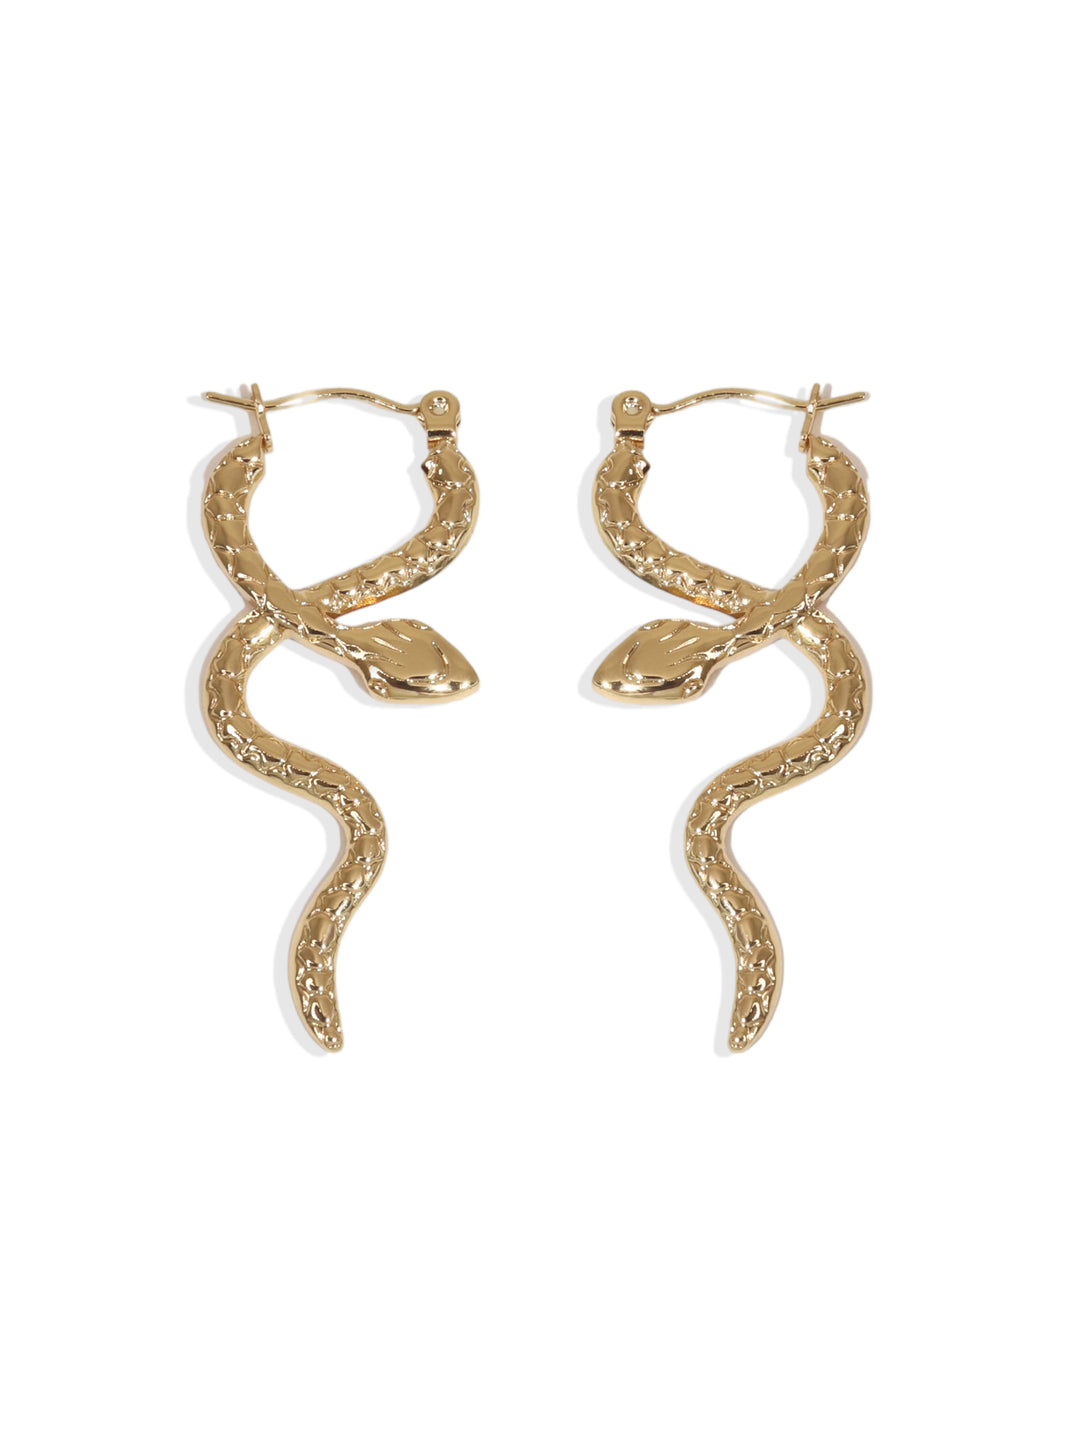 Boa Snake Earrings